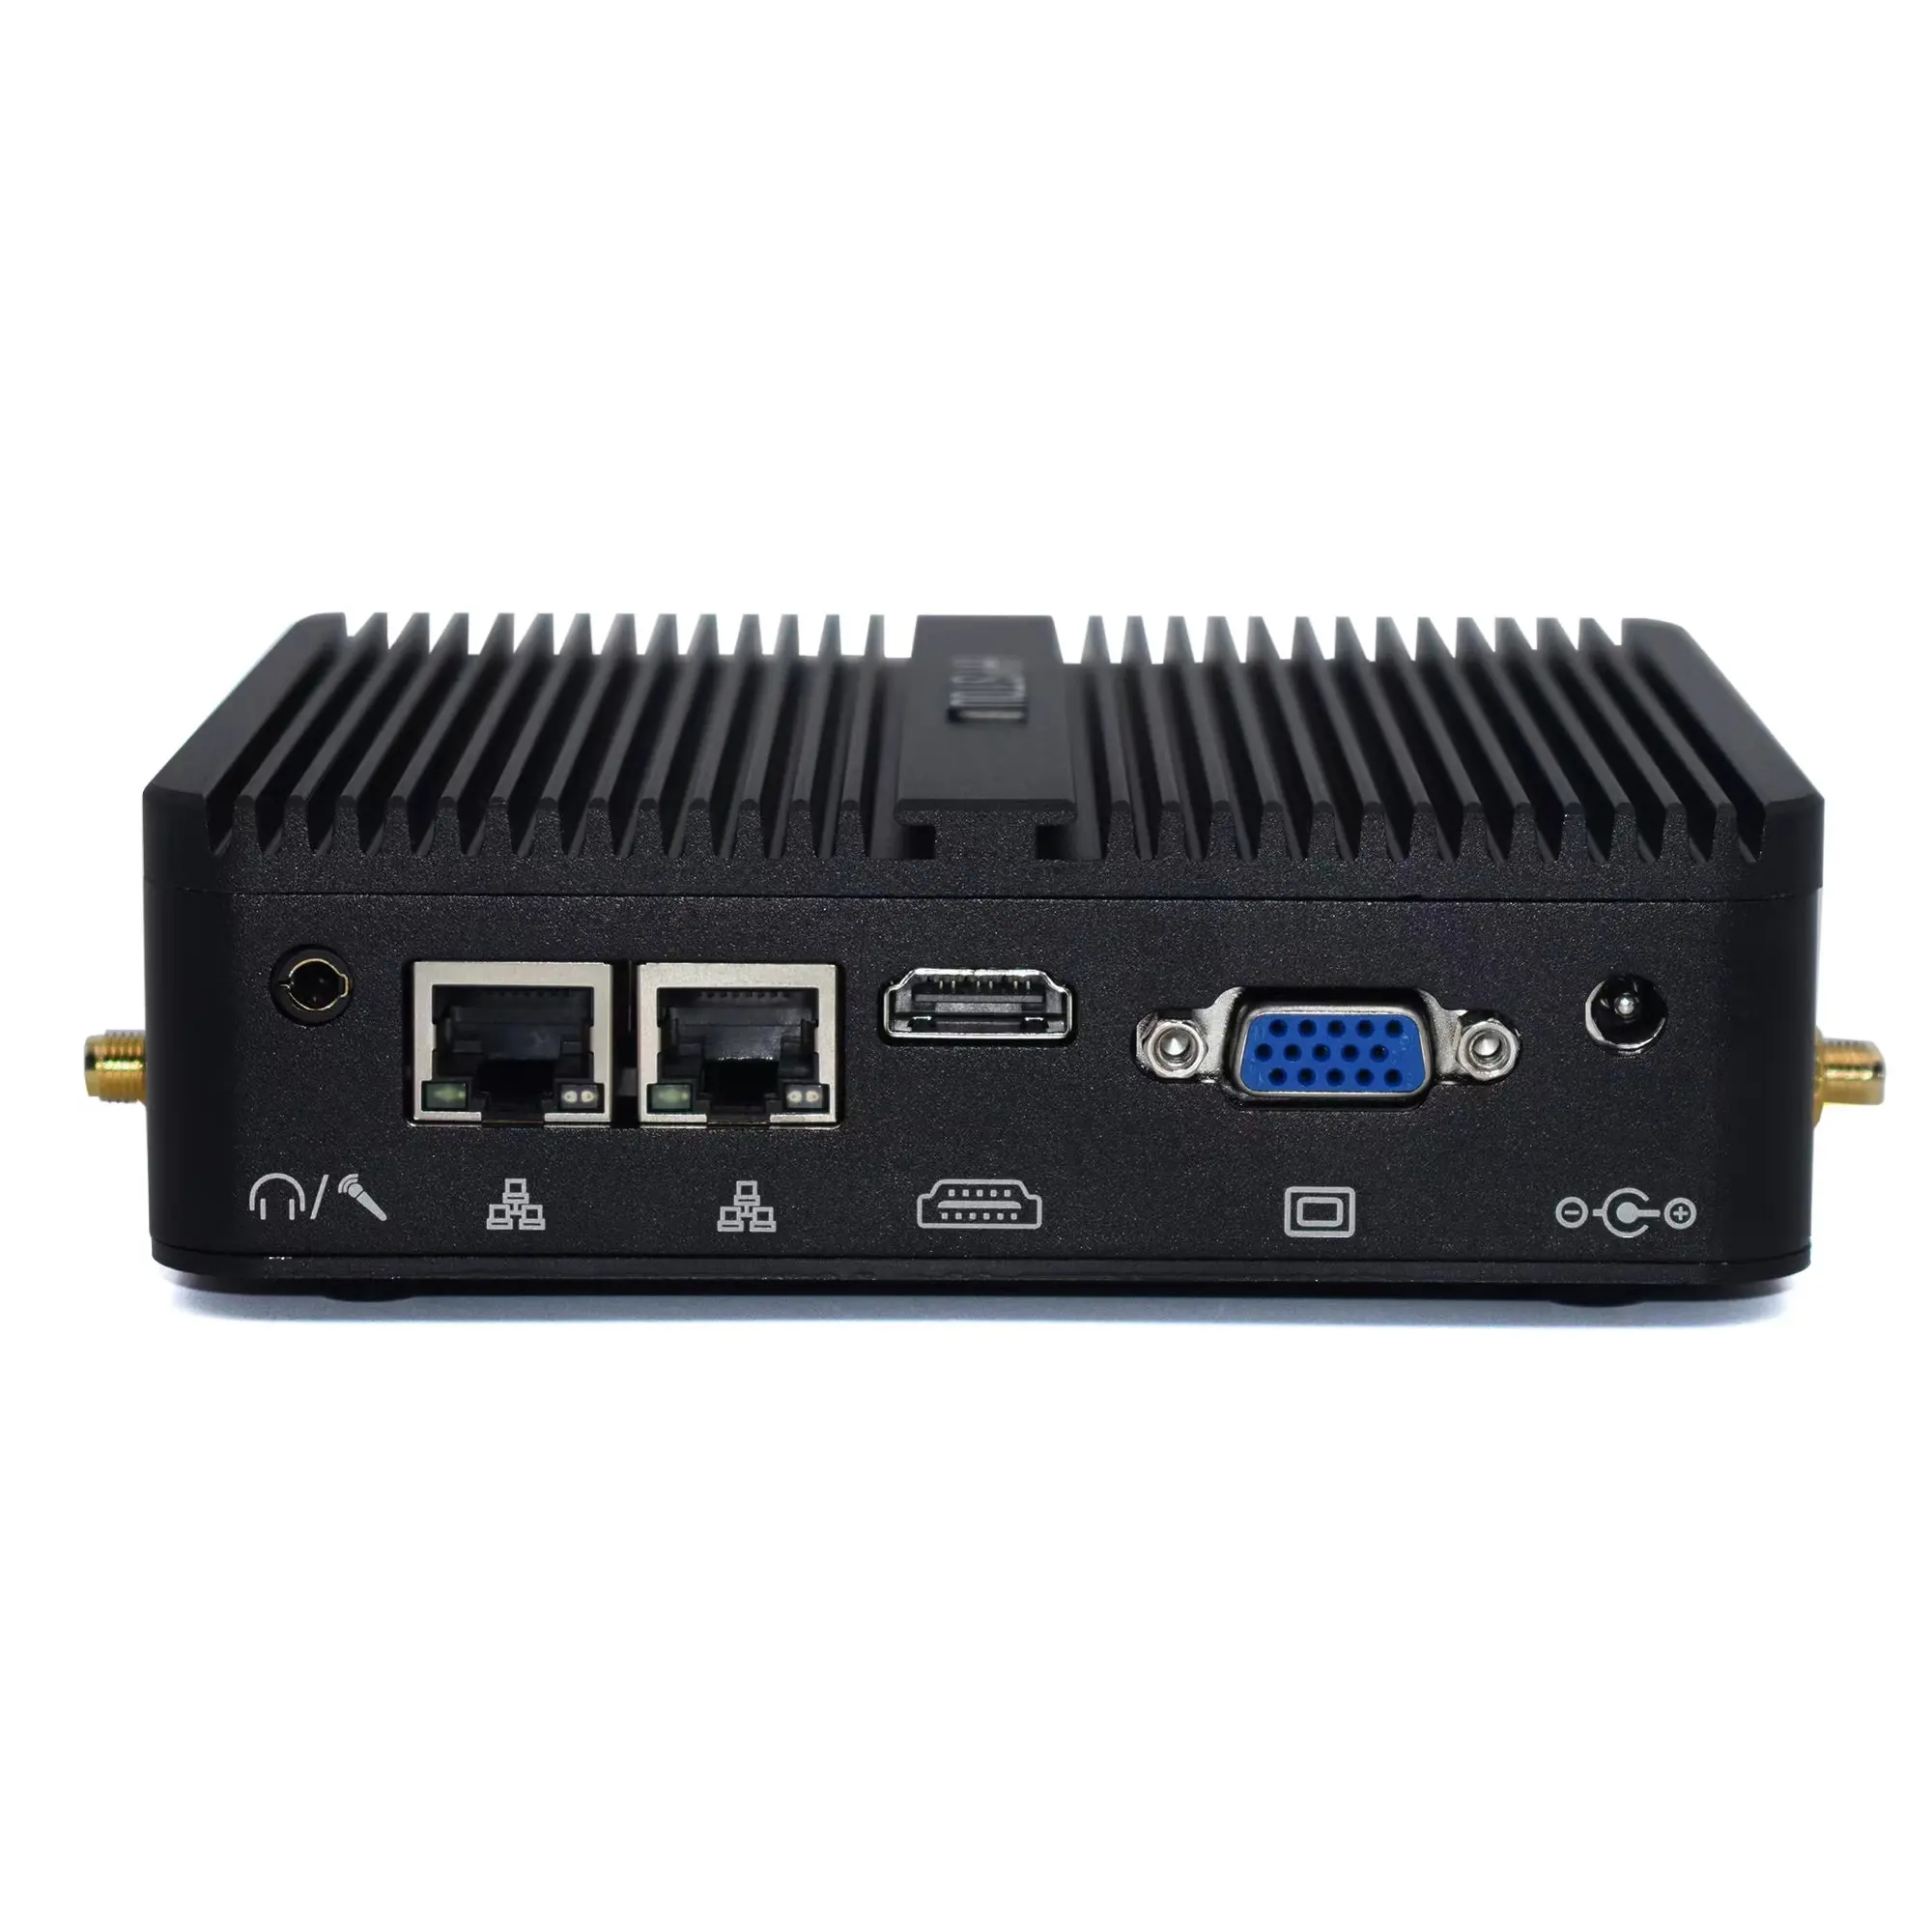 Nhà máy giá rẻ Mini PC Intel Celeron J1900 kép 2 LAN Ethernet 4 USB Ubuntu Win 10 NUC Nano không quạt công nghiệp Mini PC